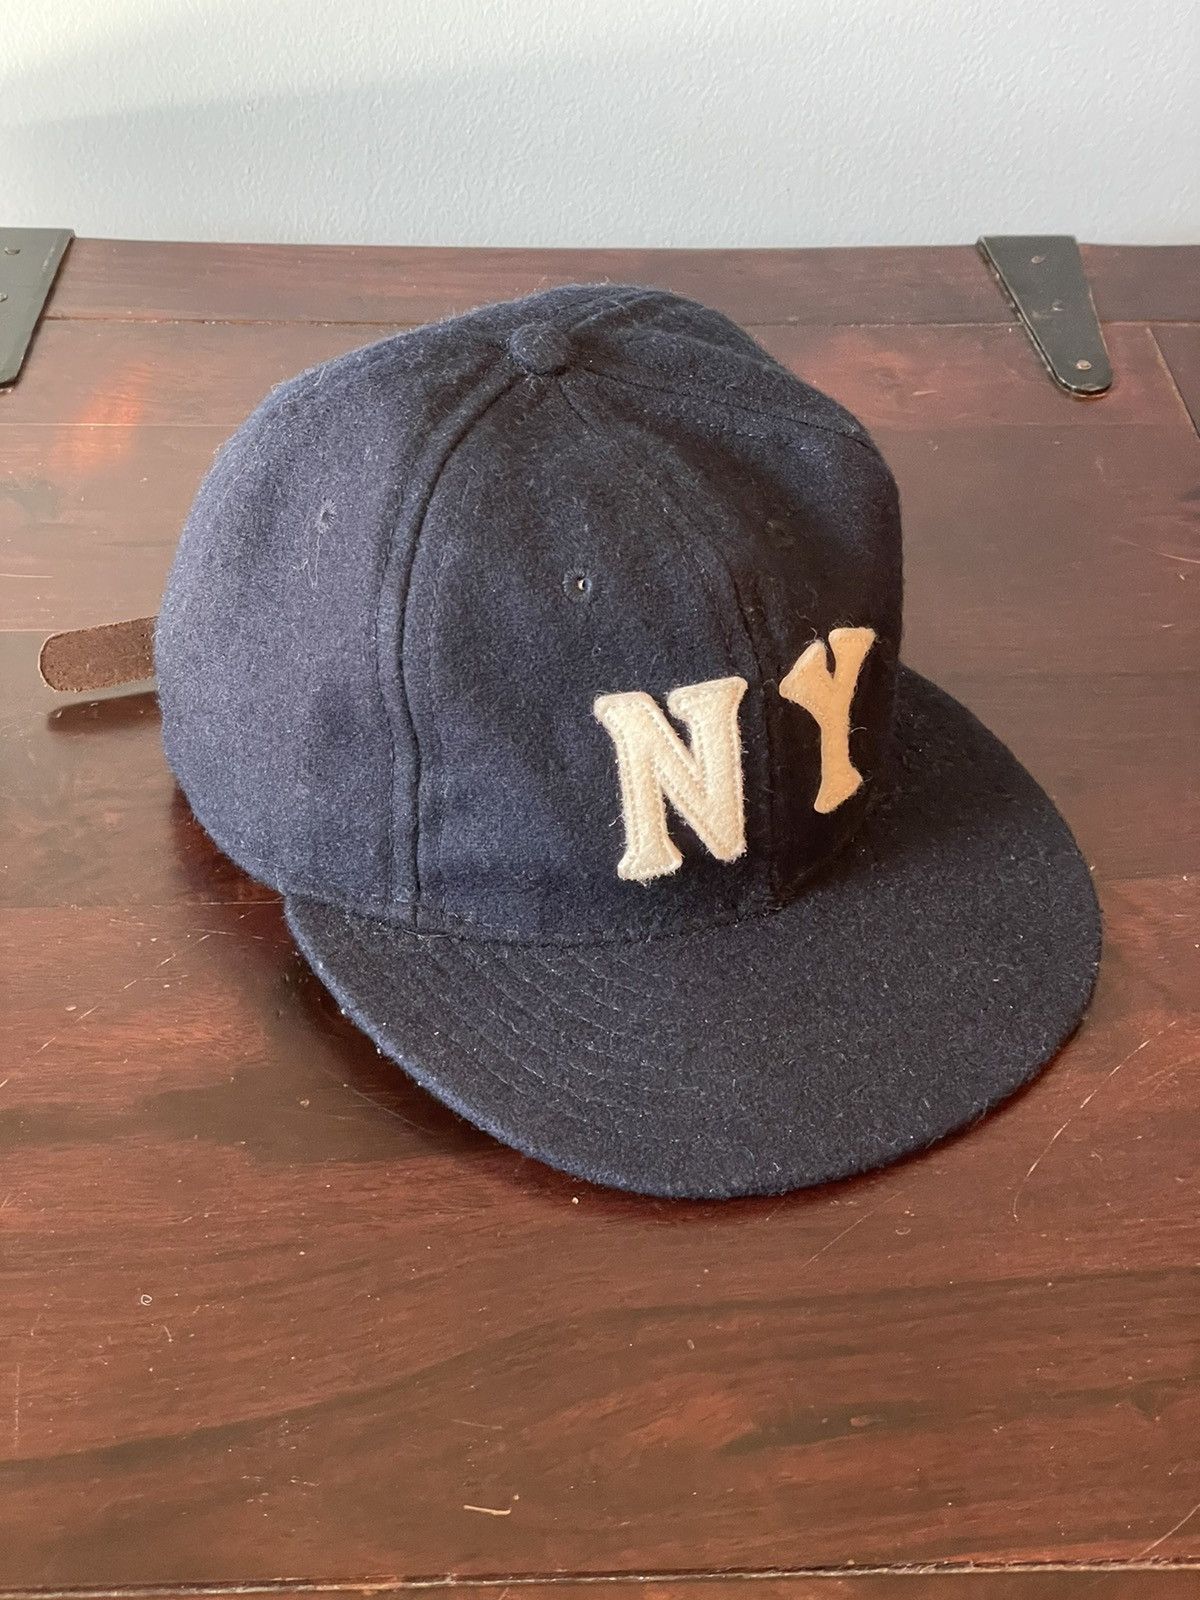 Ebbets New York Black Yankees 1936 Vintage Ballcap Navy